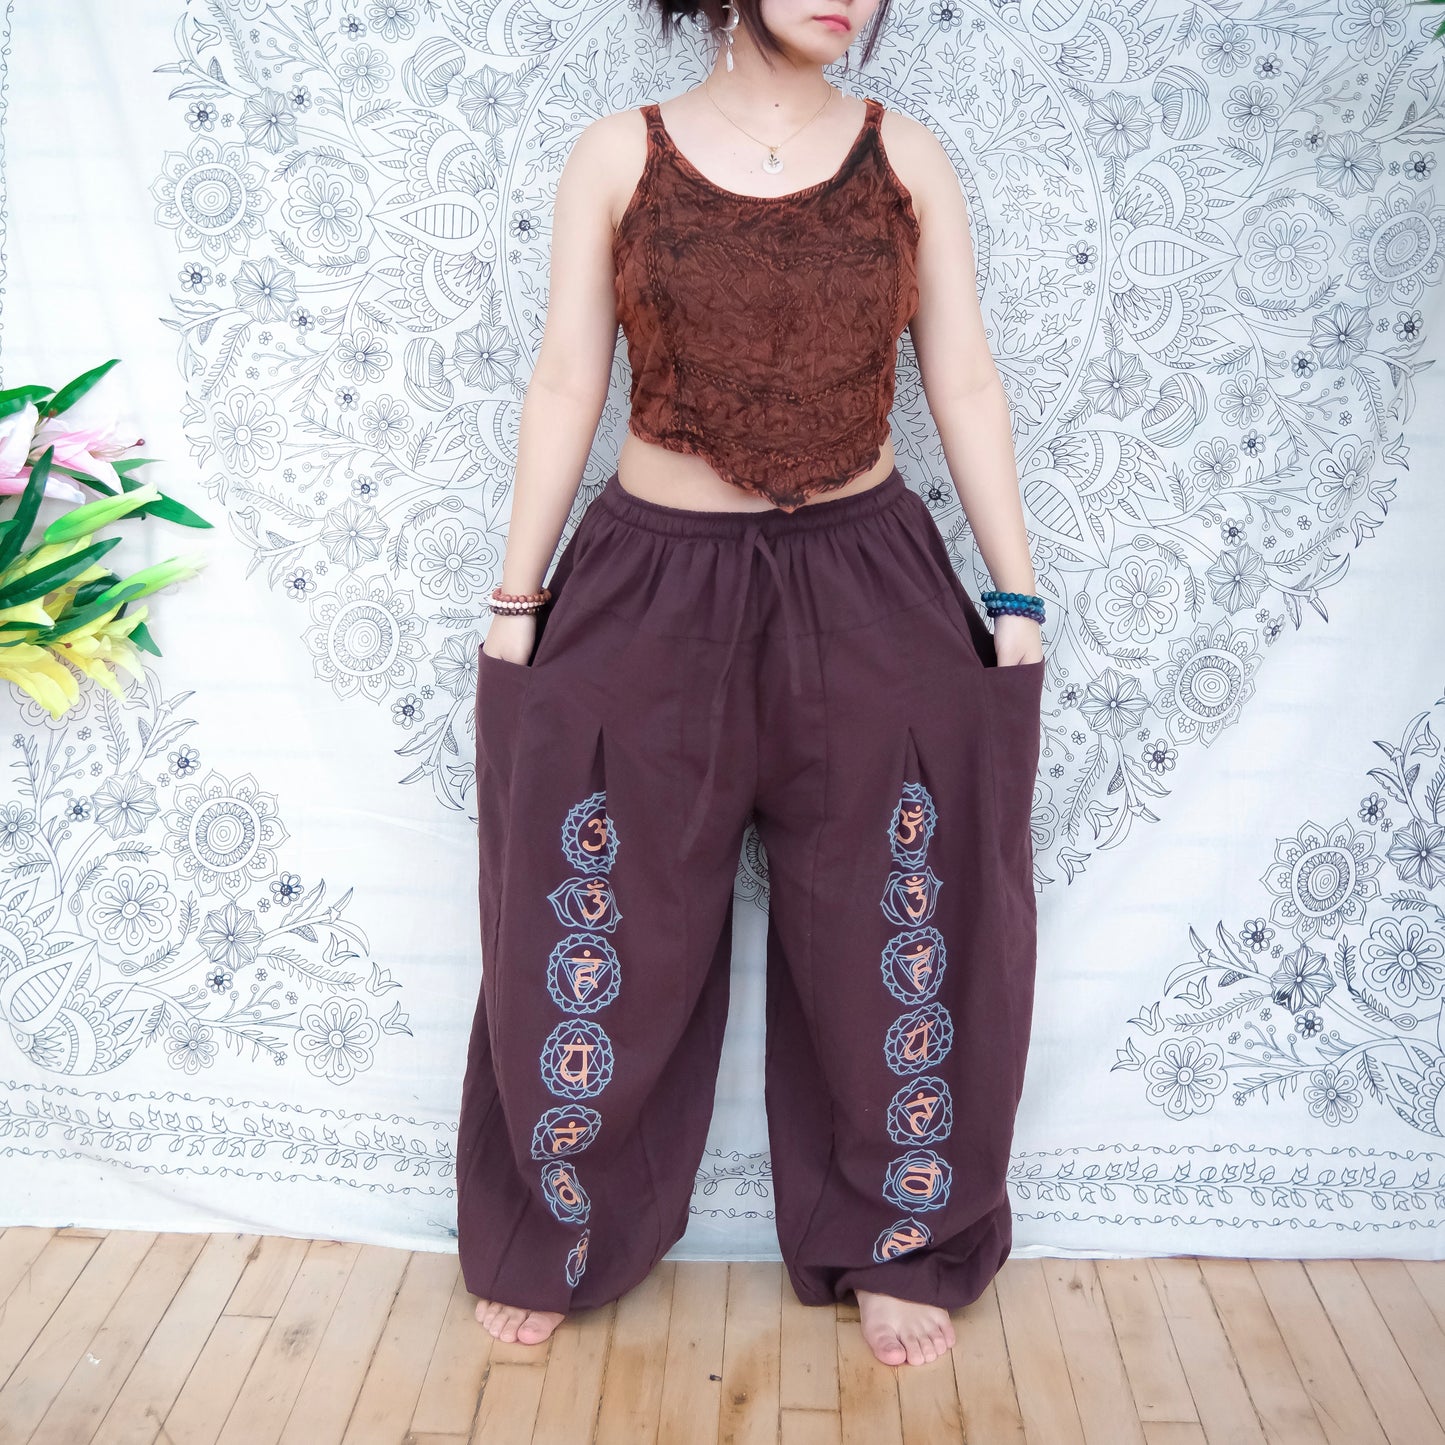 Cotton Chakra Print Yoga Pants